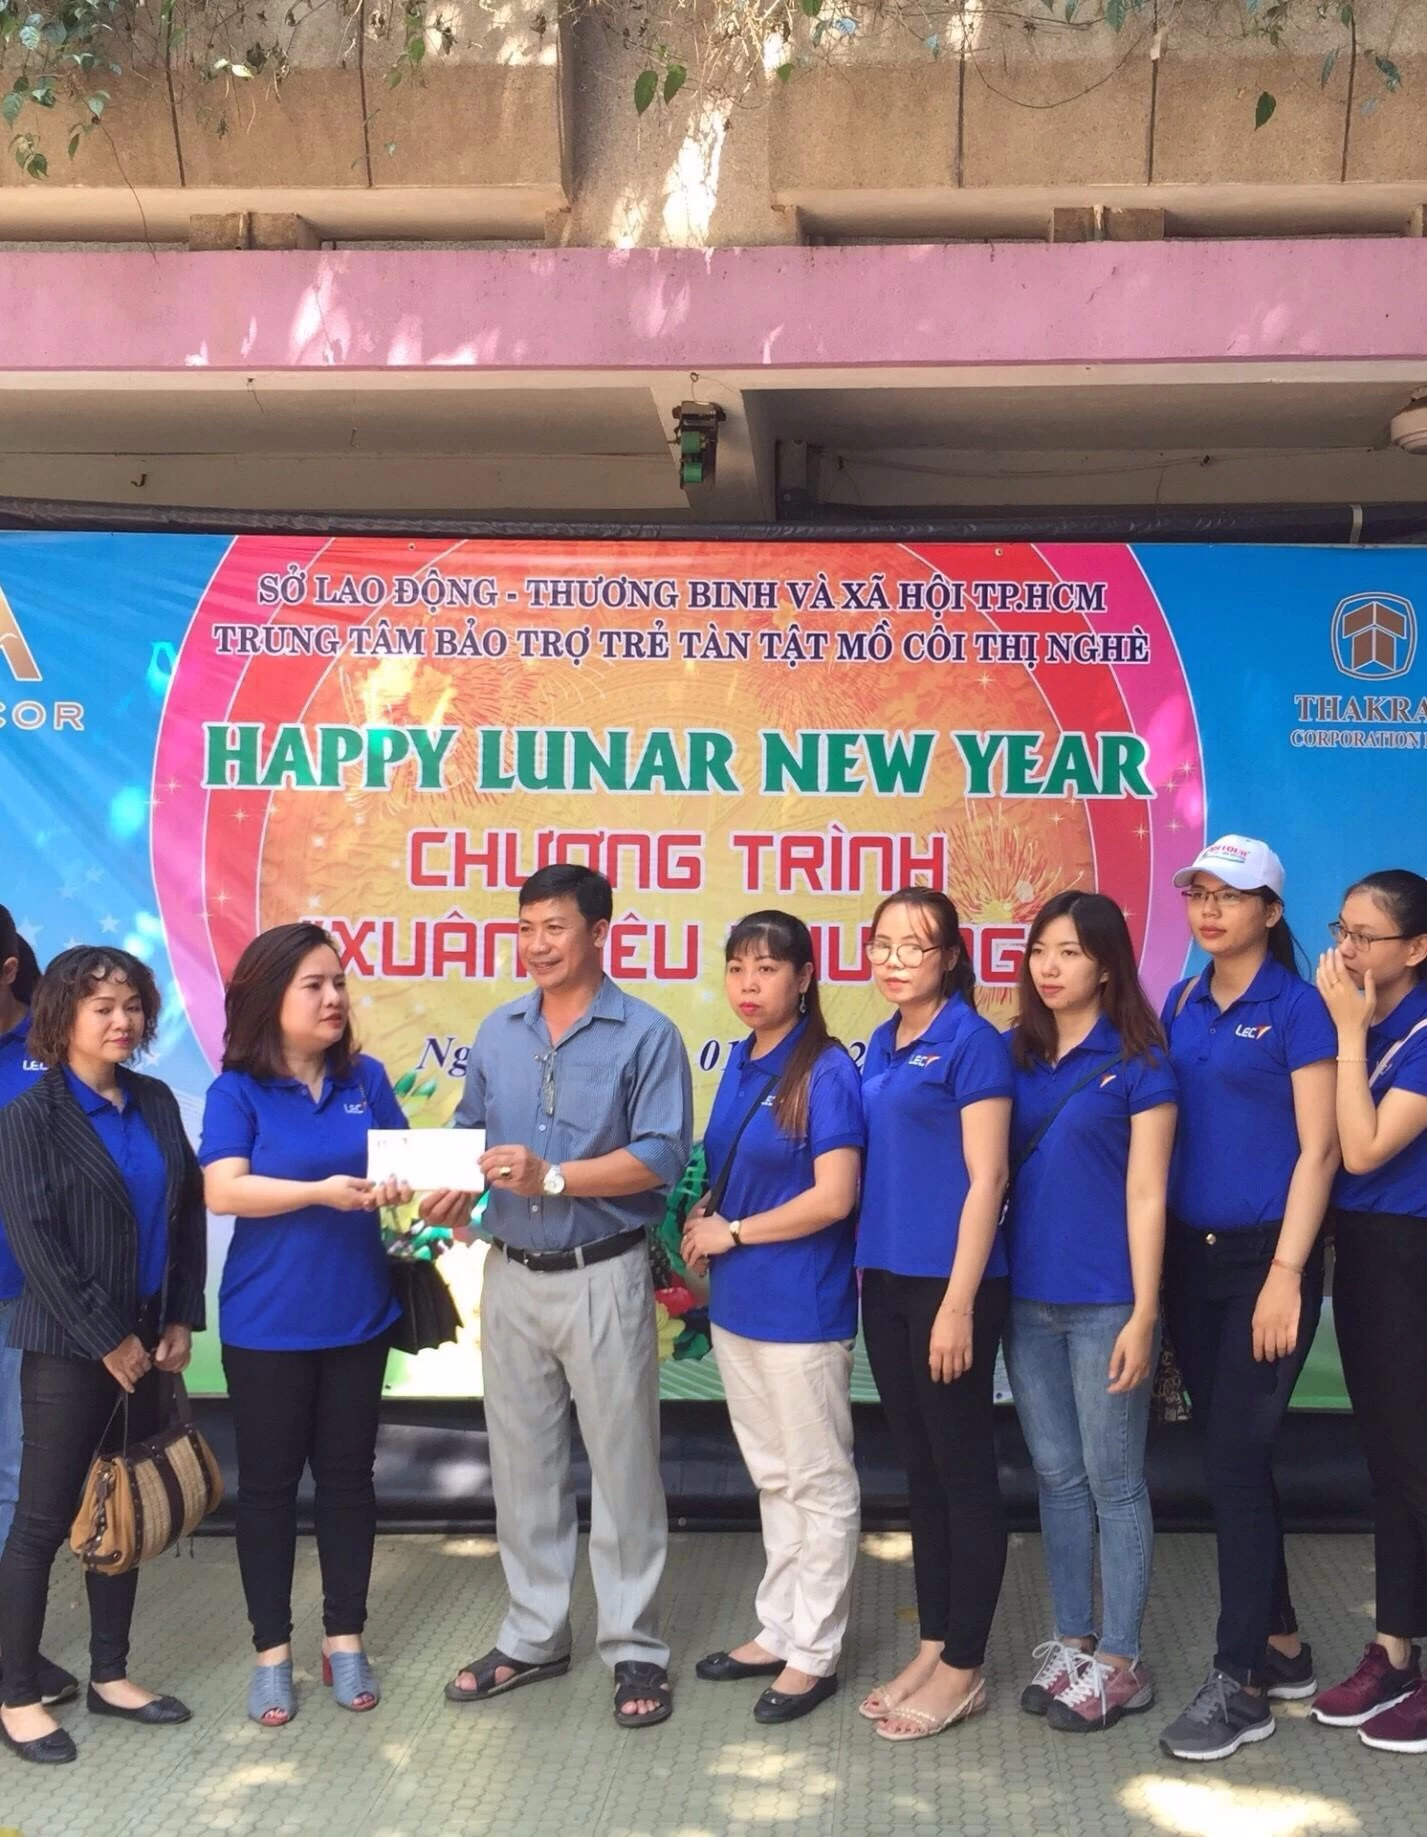 Chia sẻ yêu thương cùng LEC VIỆT NAM với chuyến từ thiện tại Trung tâm Bảo trợ trẻ em tàn tật Thị Nghè